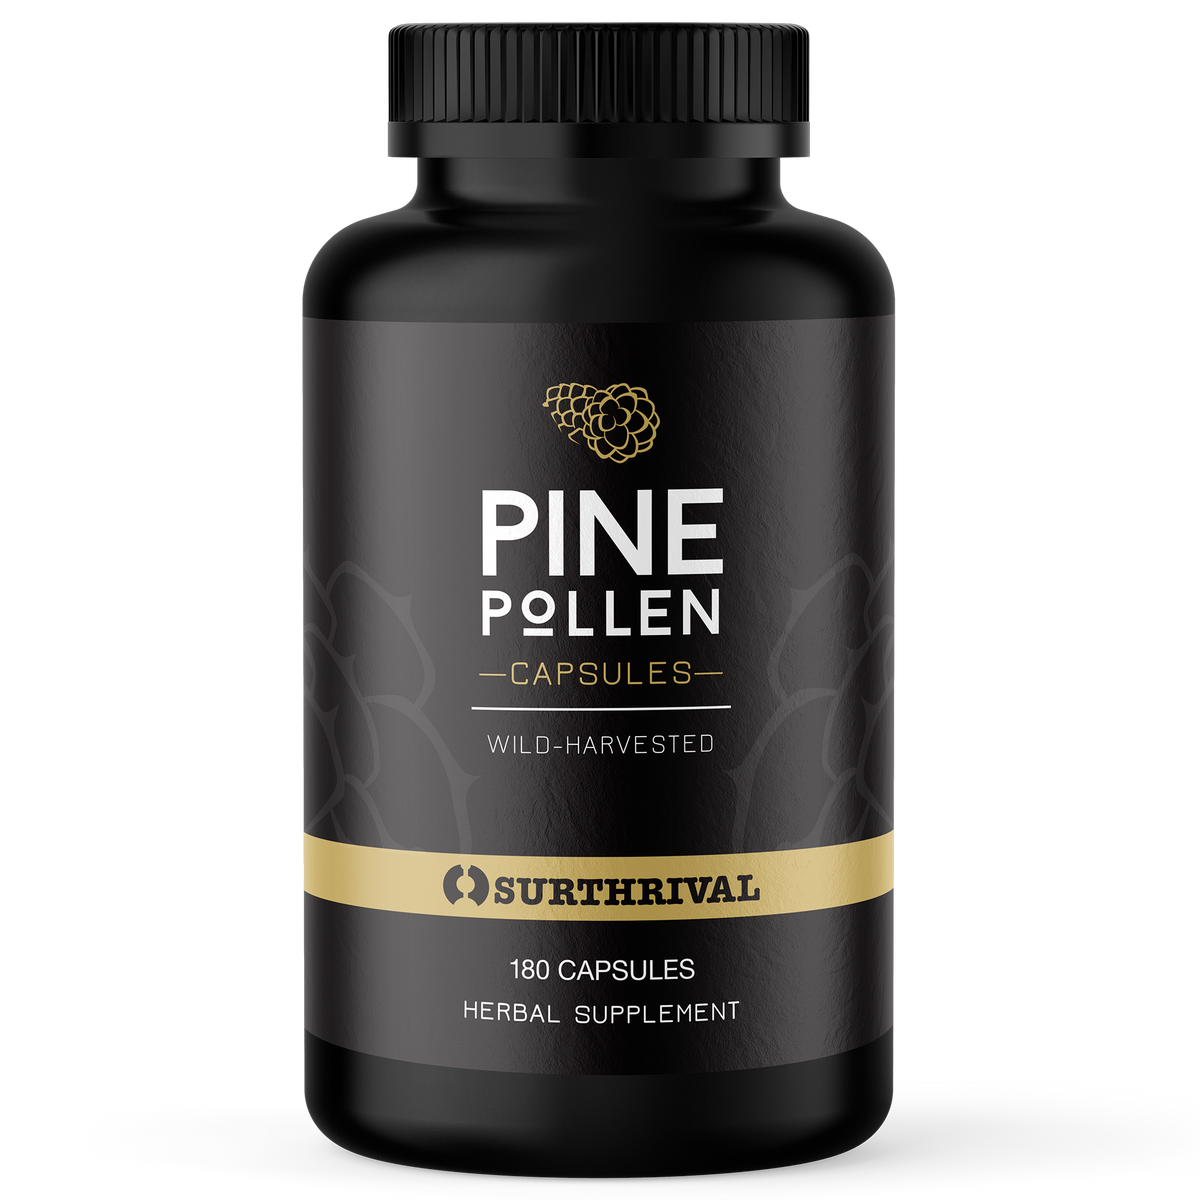 Pine Pollen Powder